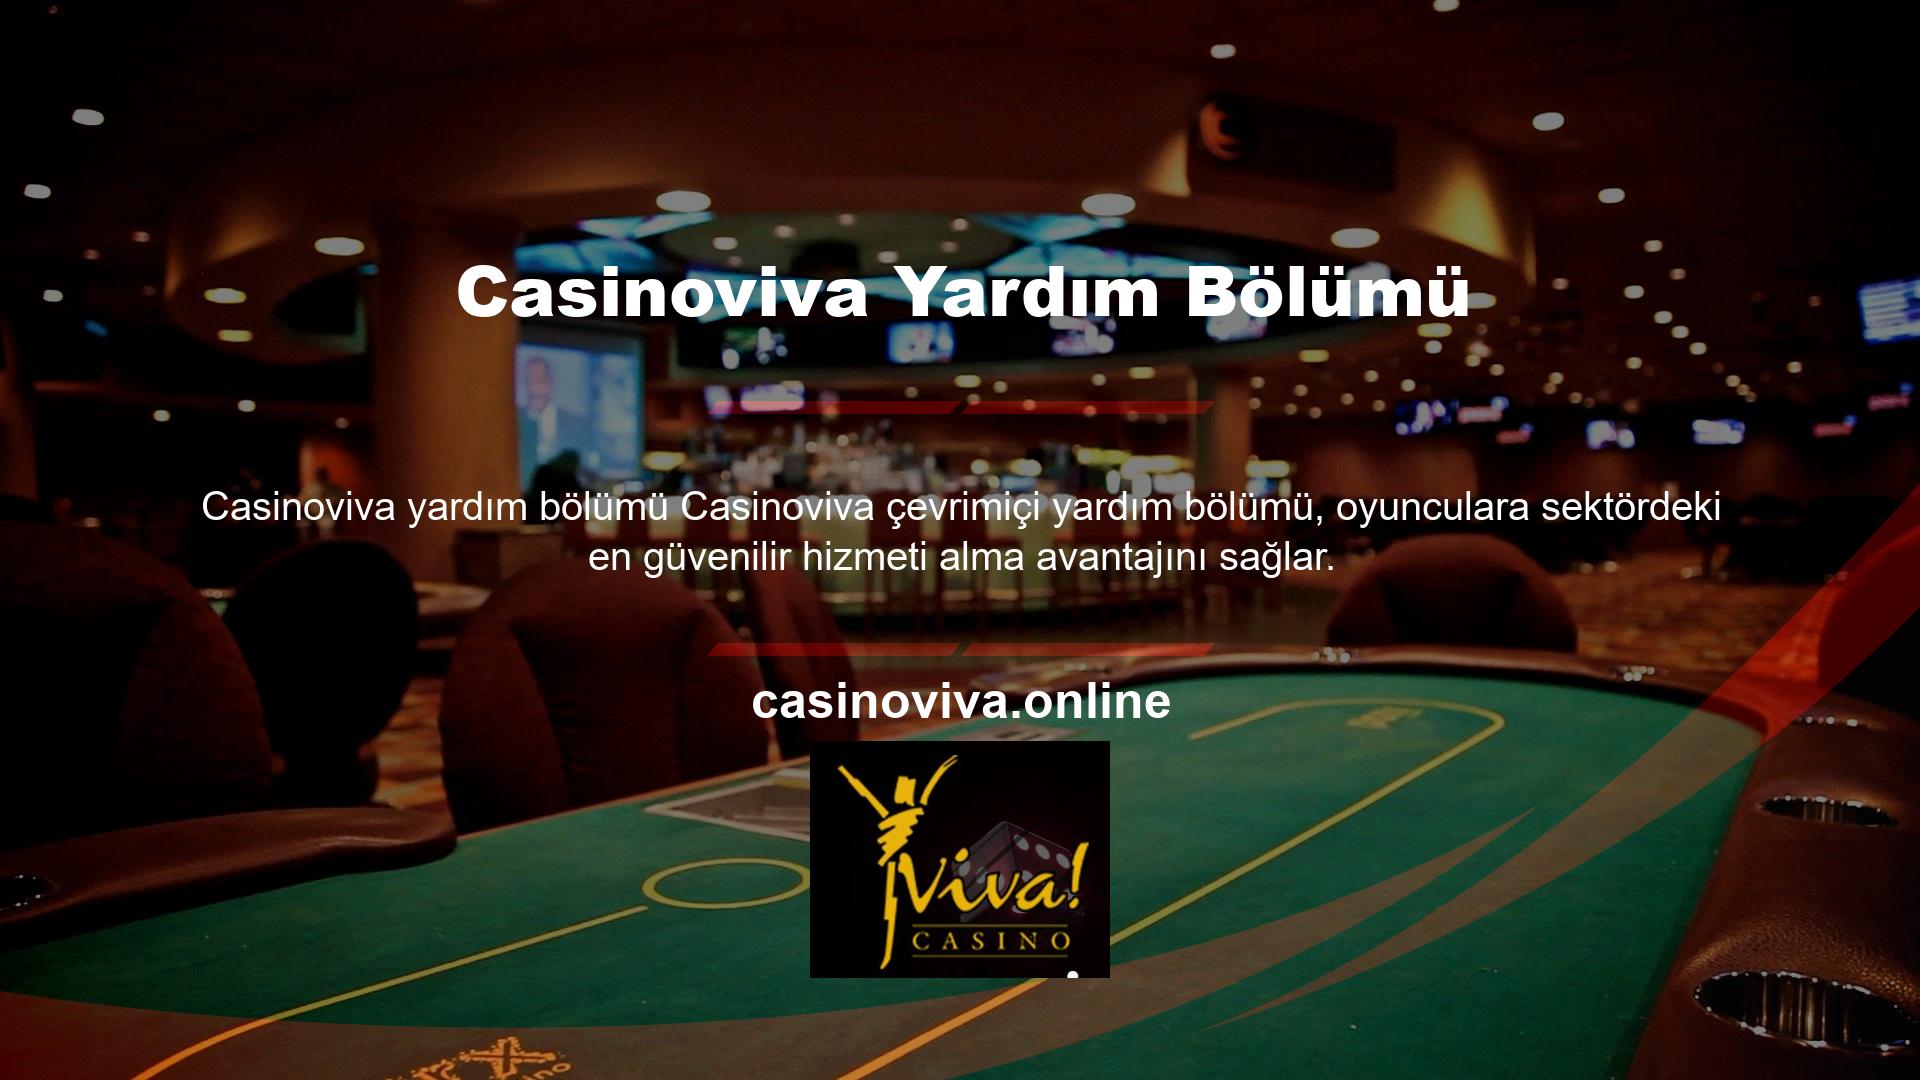 Türk casino meraklılarının ülkemizde bulunmayan seçenekleri değerlendirebildiği bu site çatısı altında çok büyük kazançlar elde edildiği biliniyor